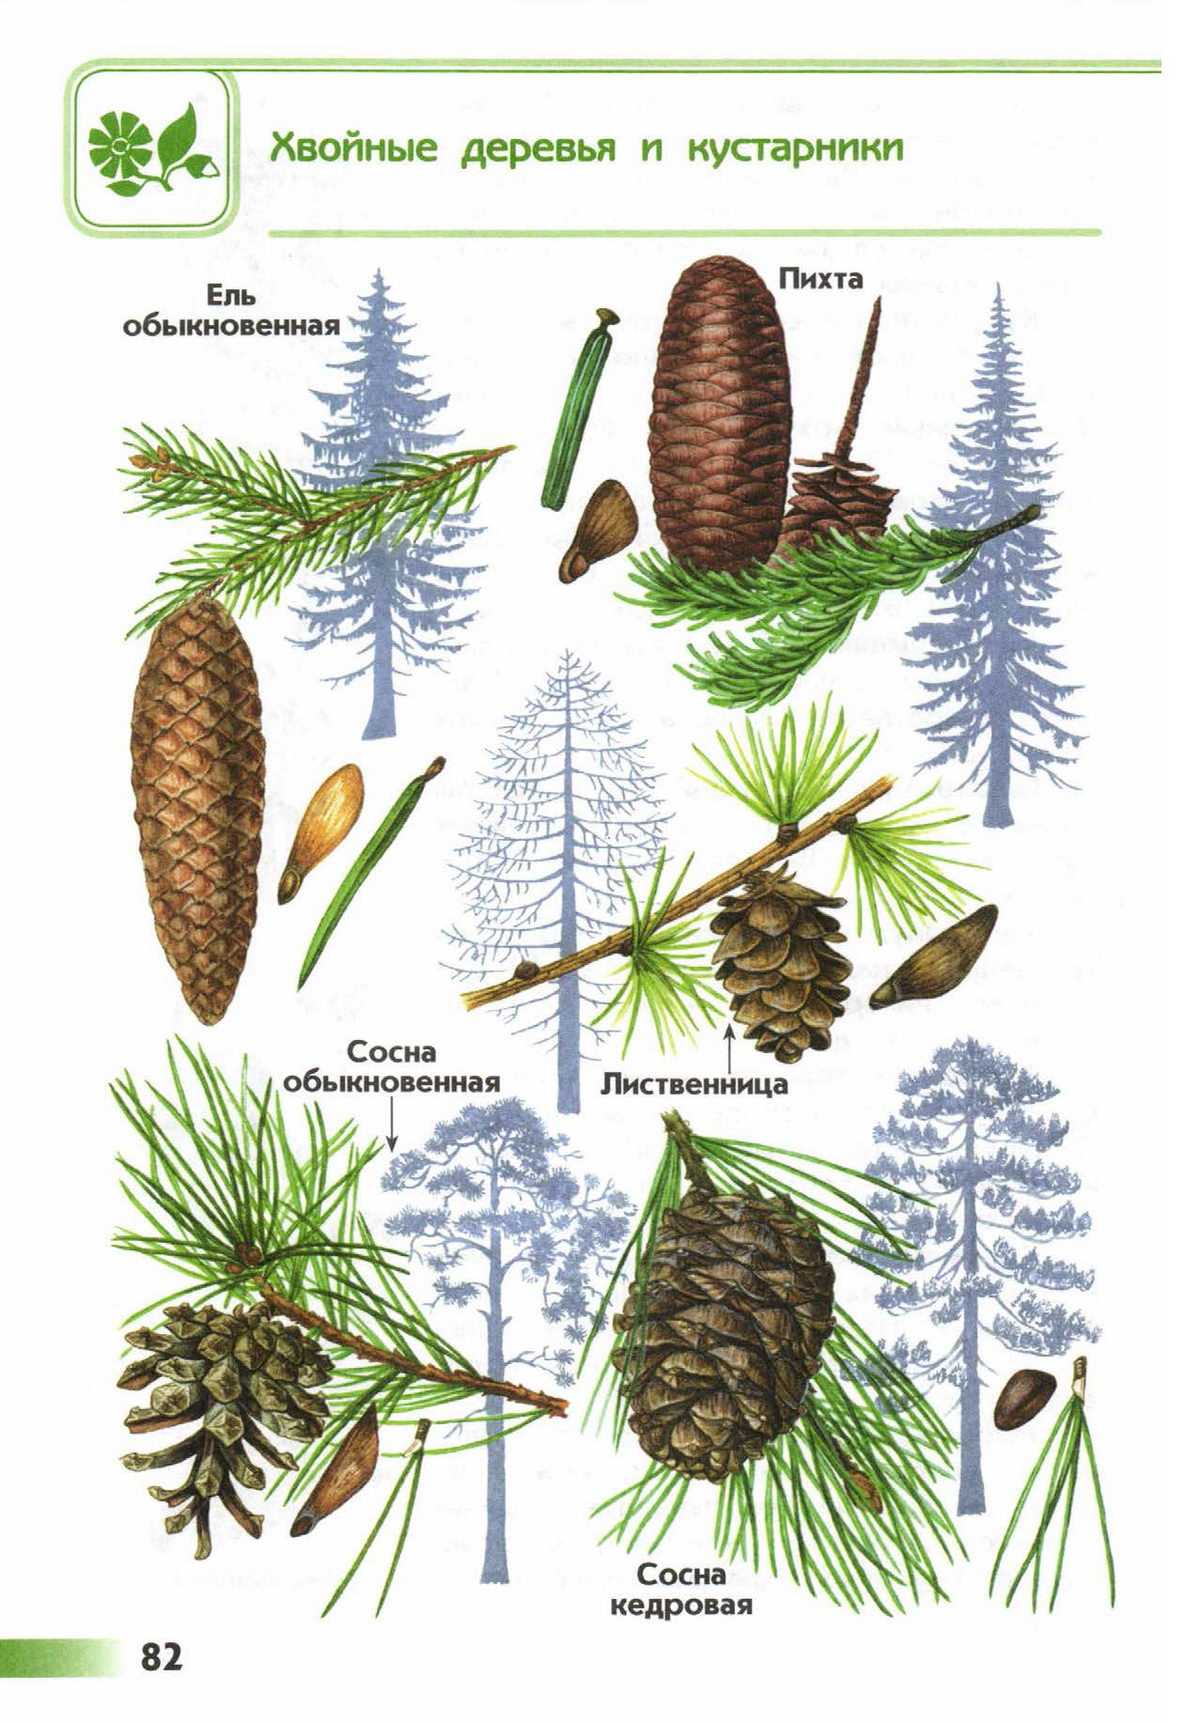 Хвойные растения: классы, виды хвойных деревьев